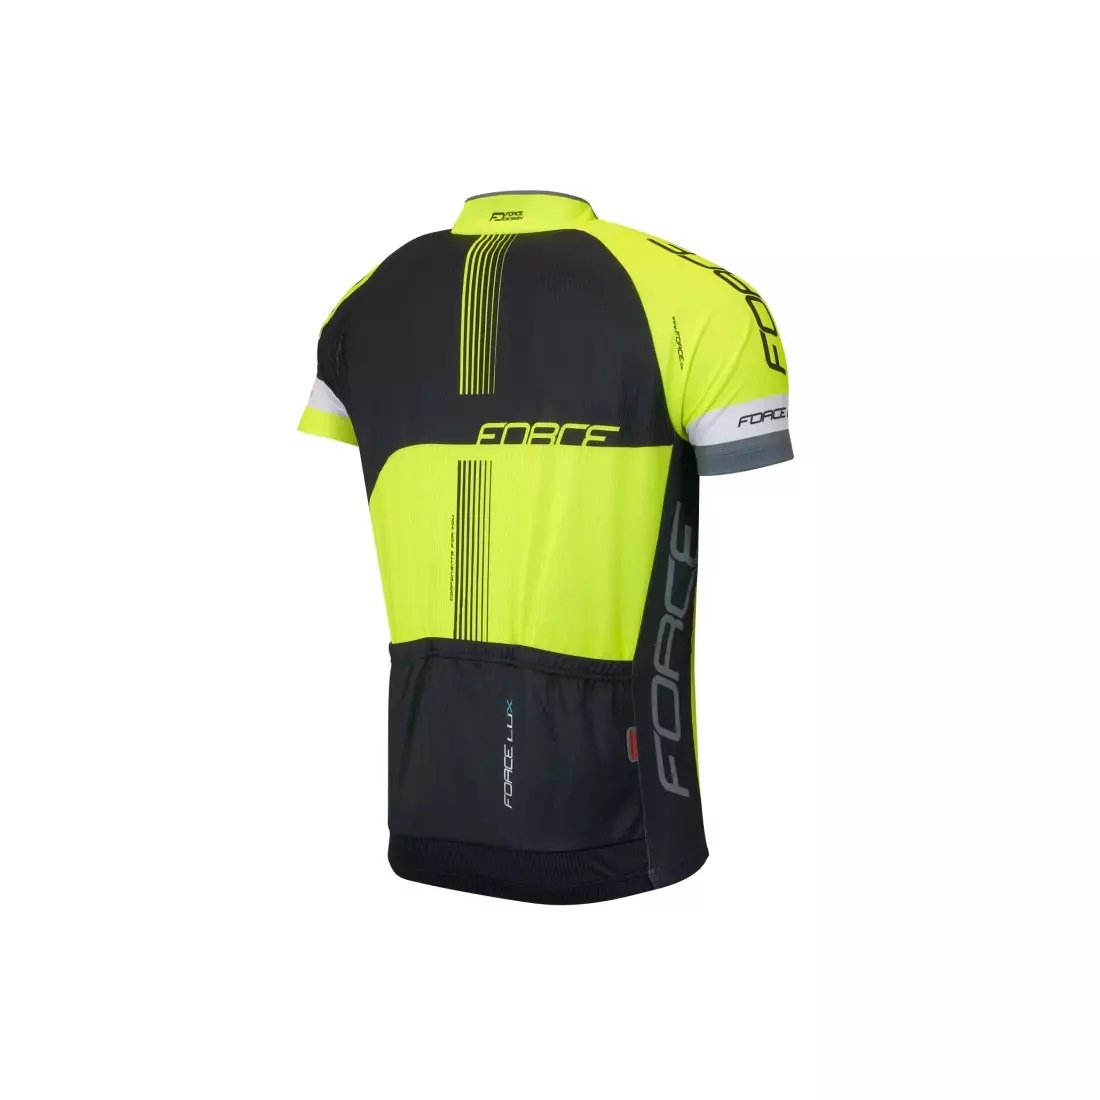 FORCE LUX pánský cyklistický dres 900131, barva: černá a fluor